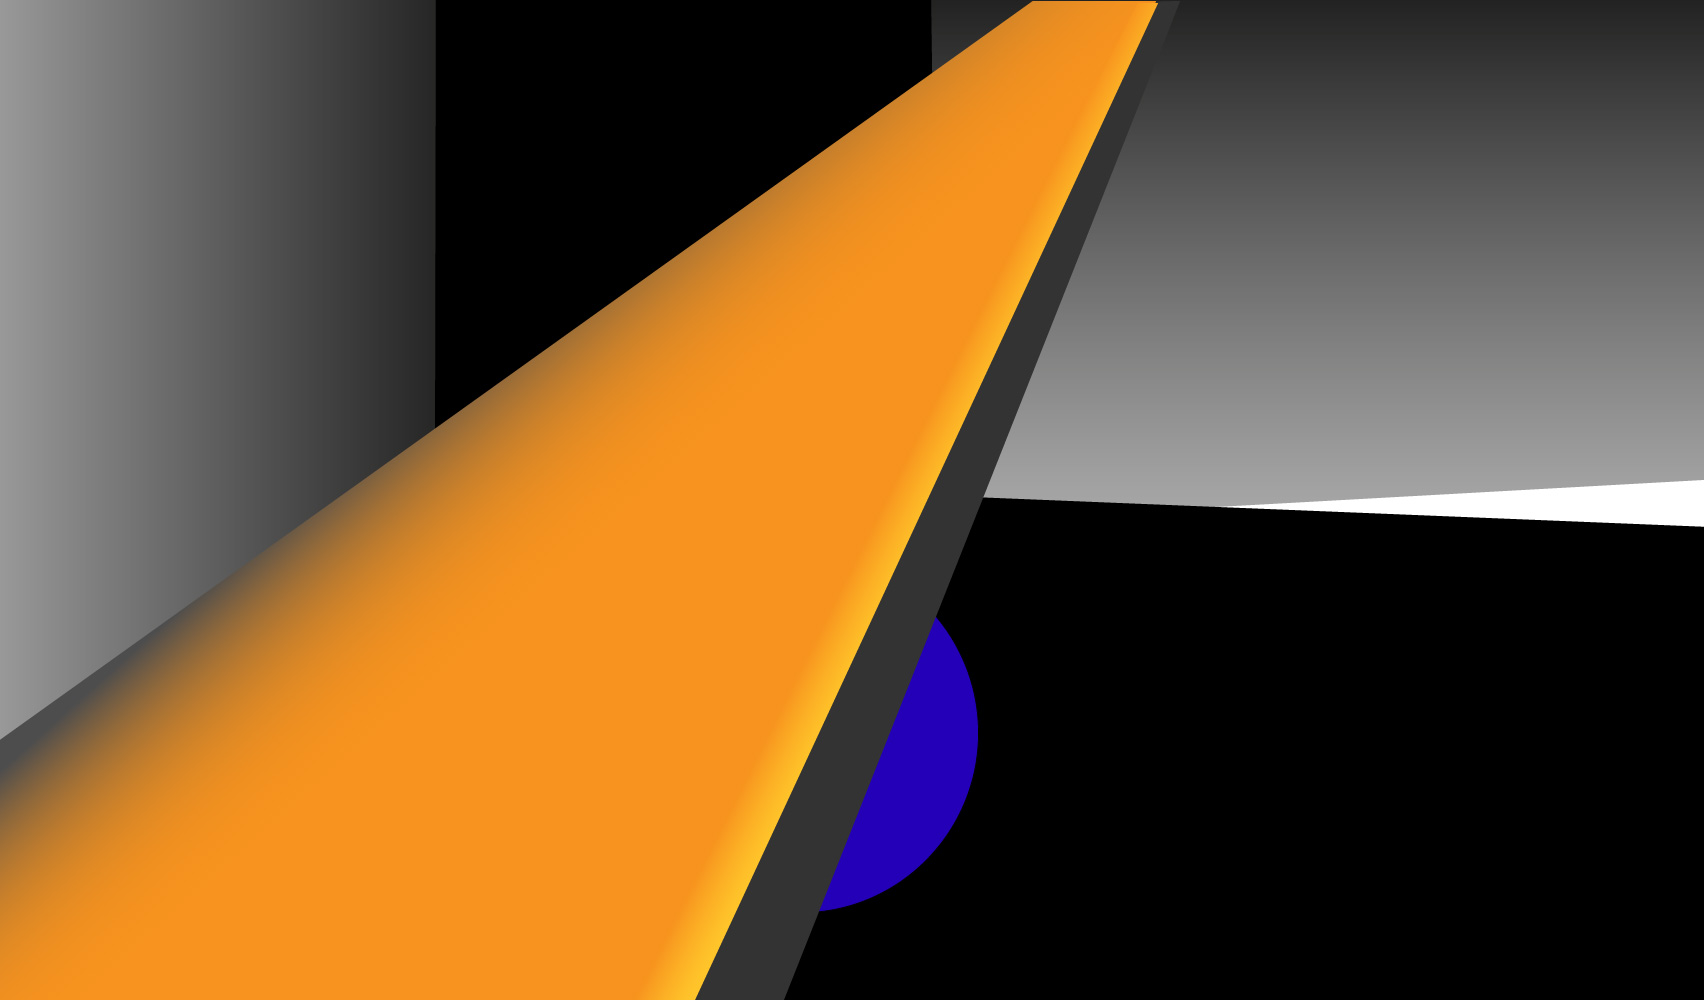 Grafiskt designmönster med orange, grått och svart-vitt.